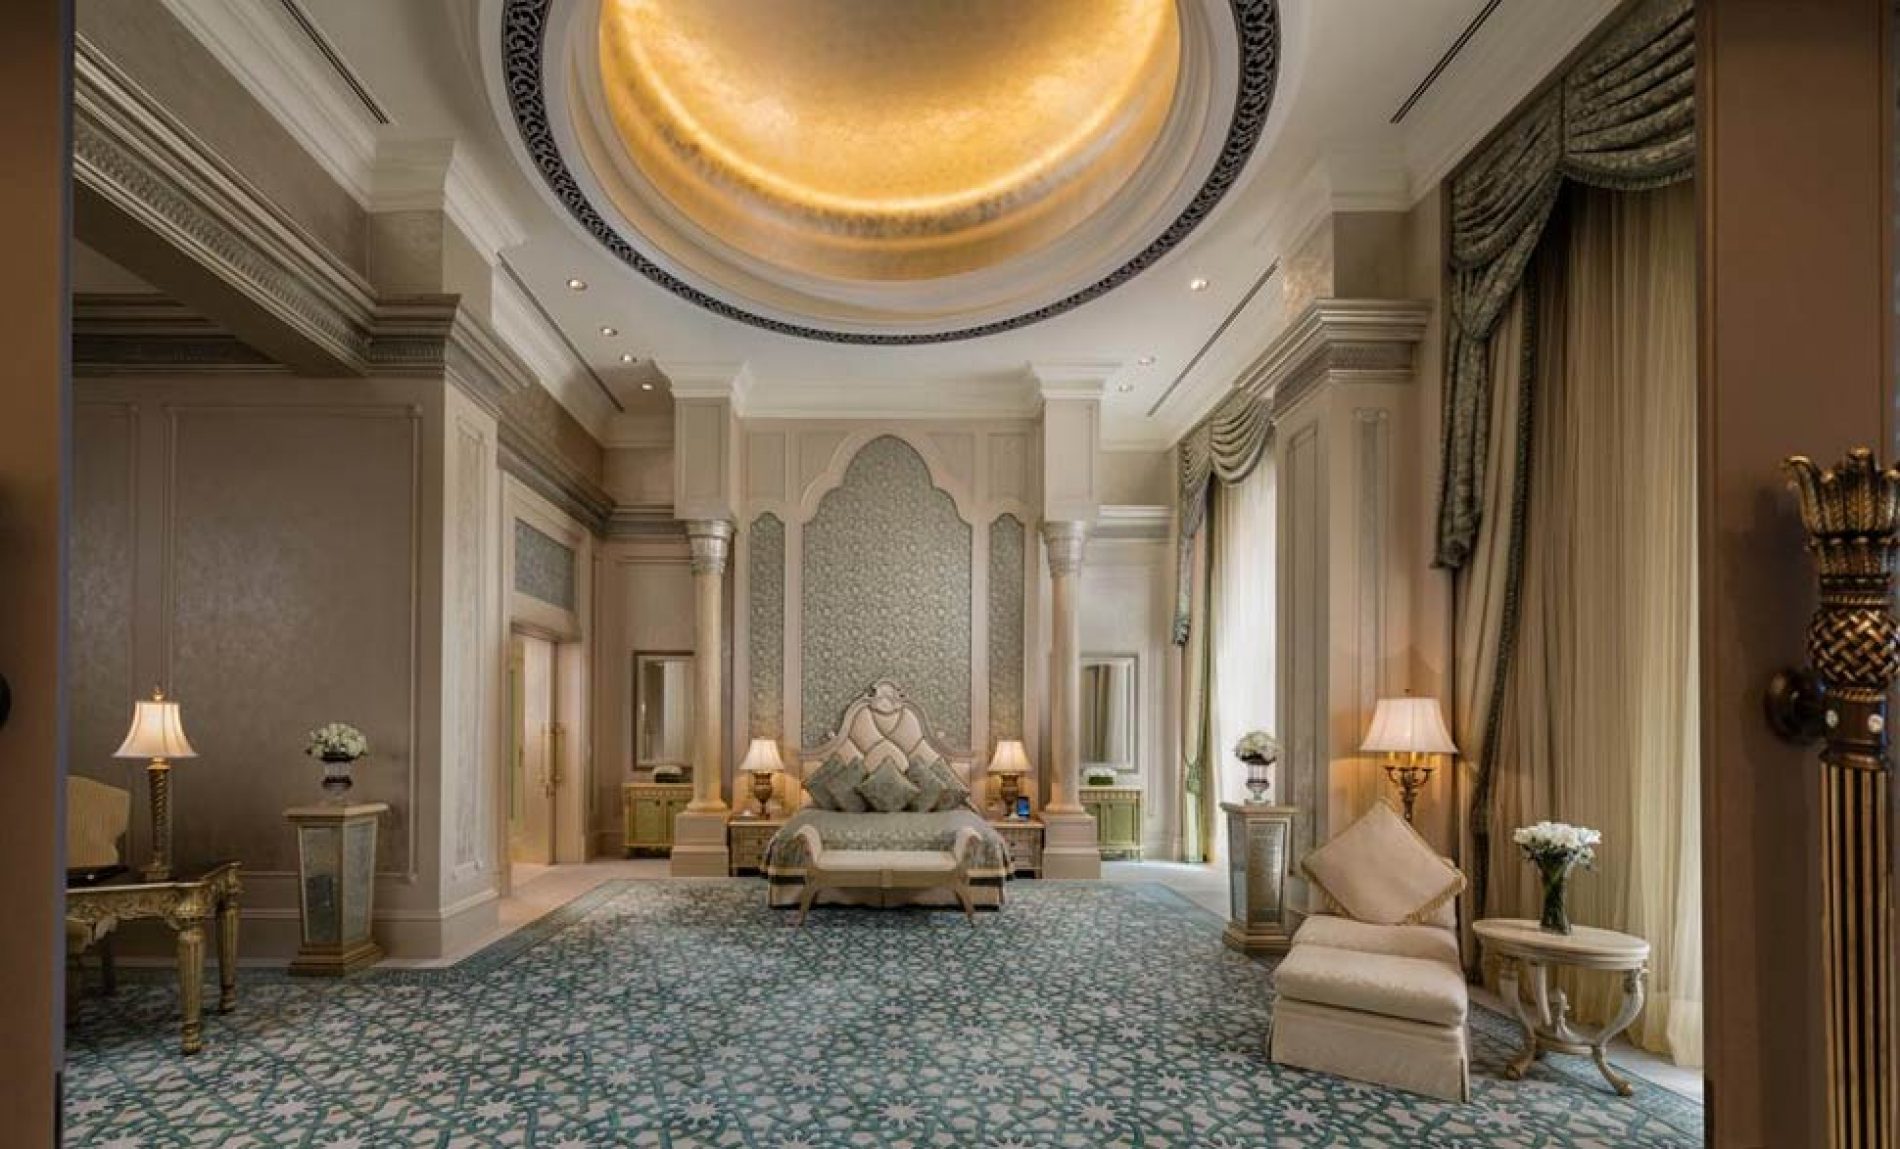 Dubai: Investitori iz Emirata namjeravaju u Bosni graditi hotel sa 7 zvjezdica